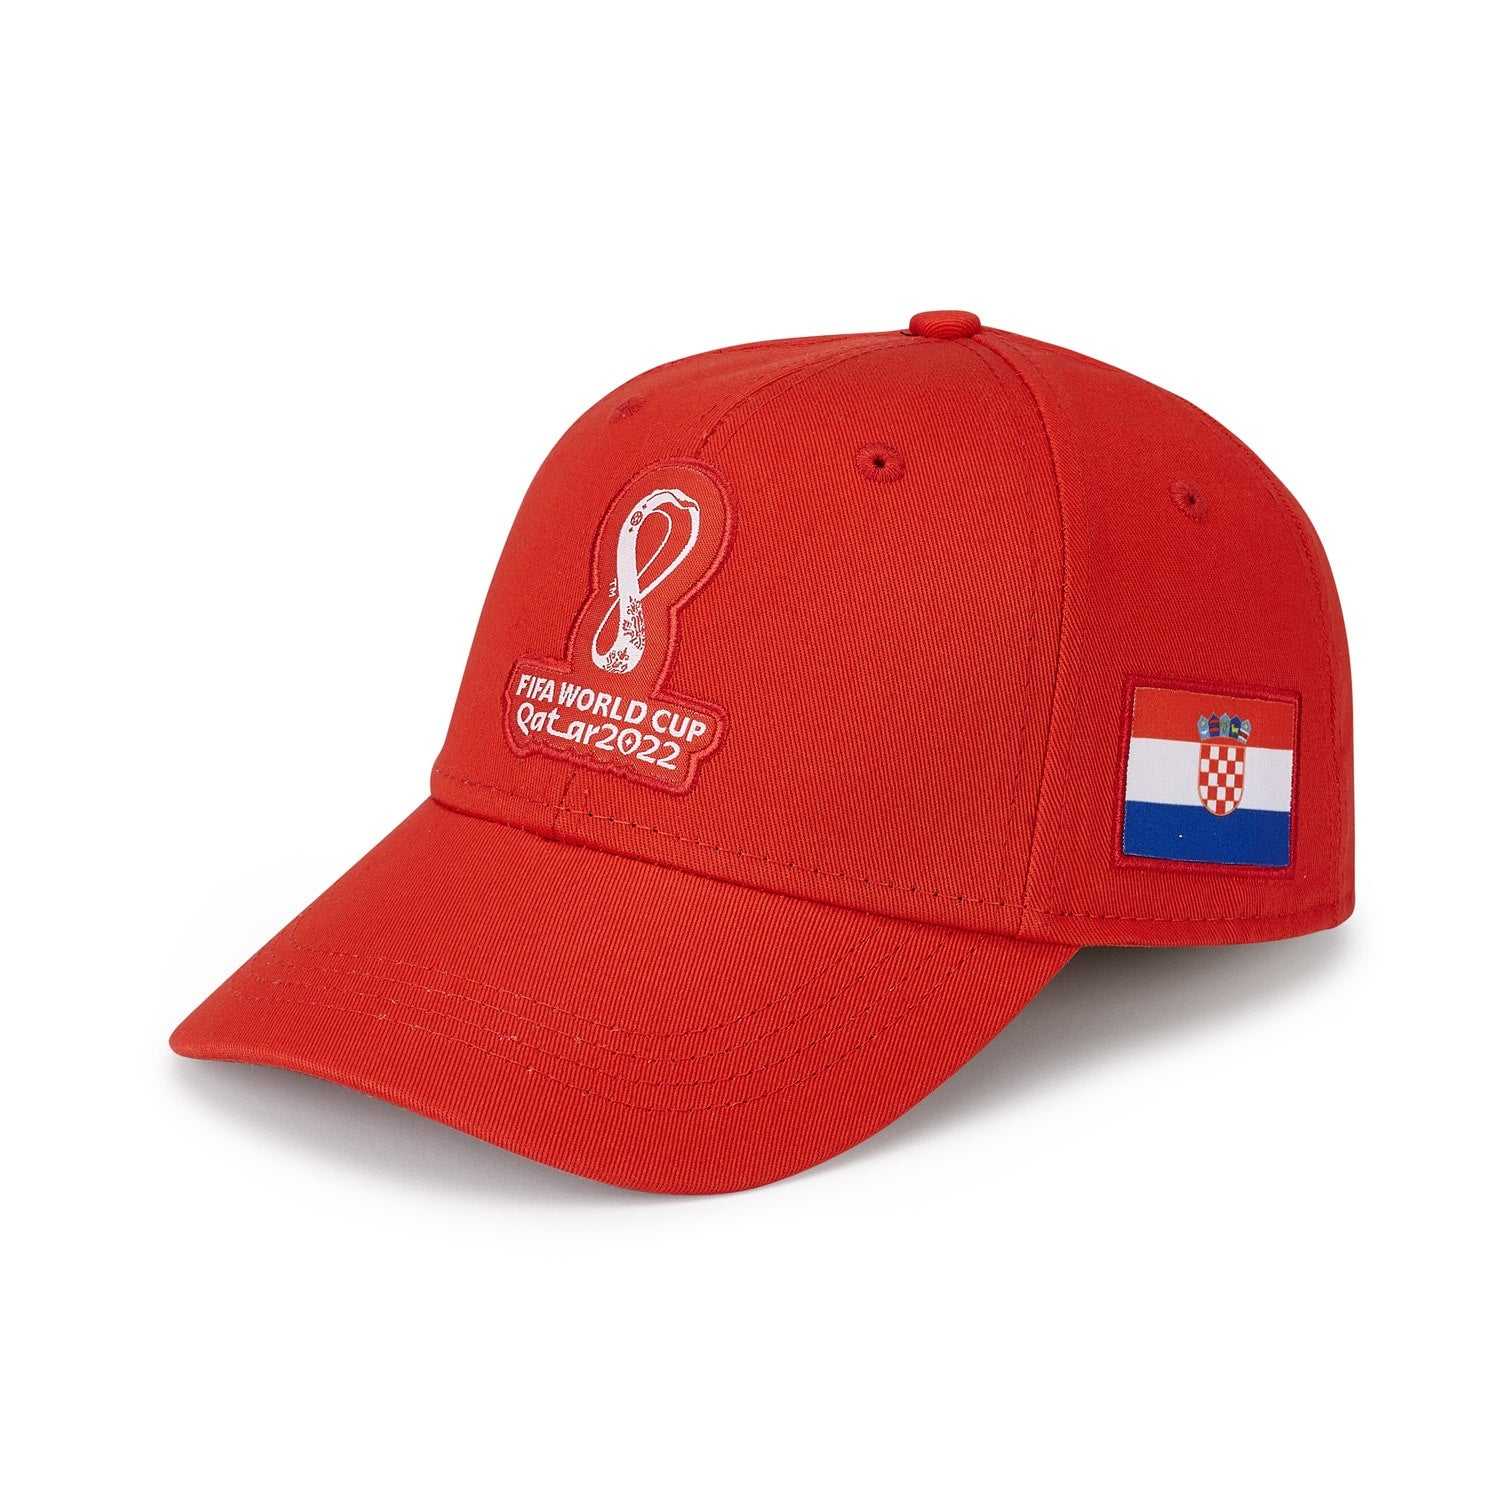 2022 World Cup Croatia Red Cap - Mens